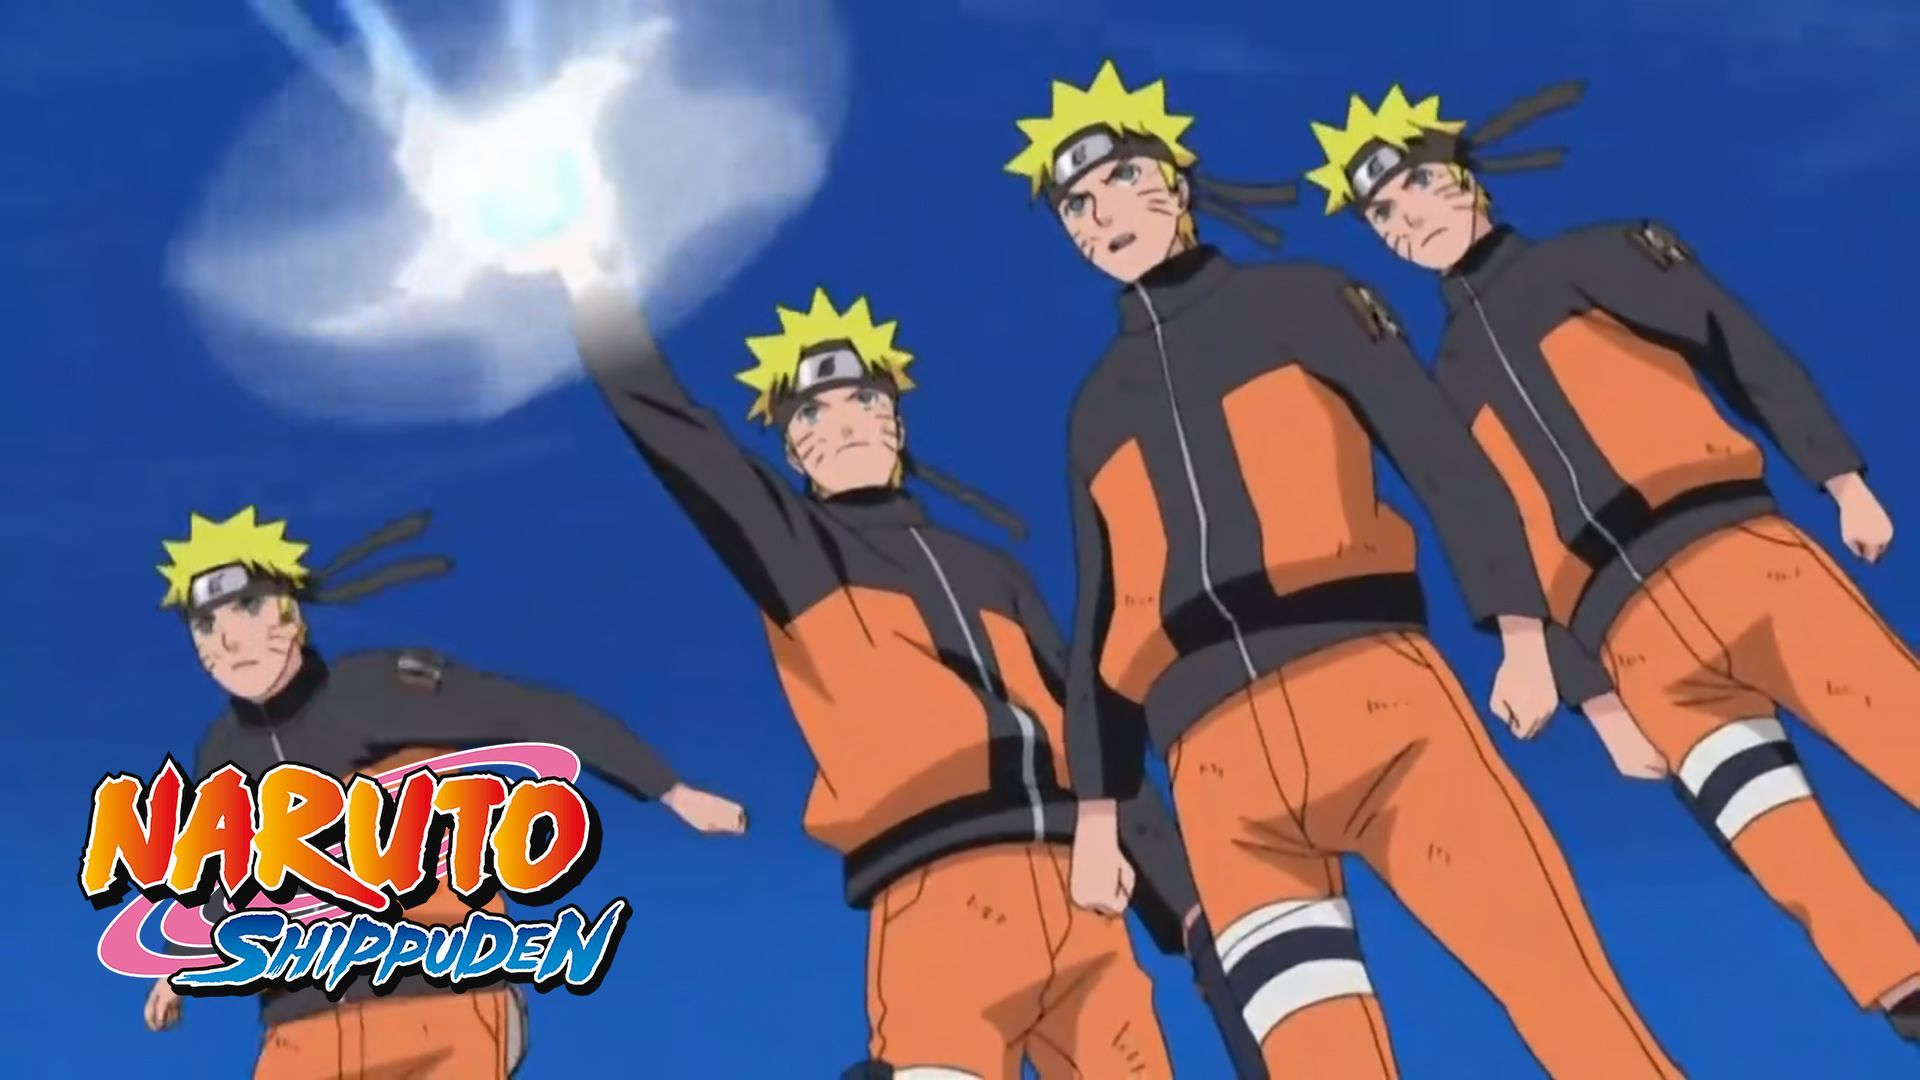 Naruto Shippuden Episode 95 Tagalog Dubbed - BiliBili